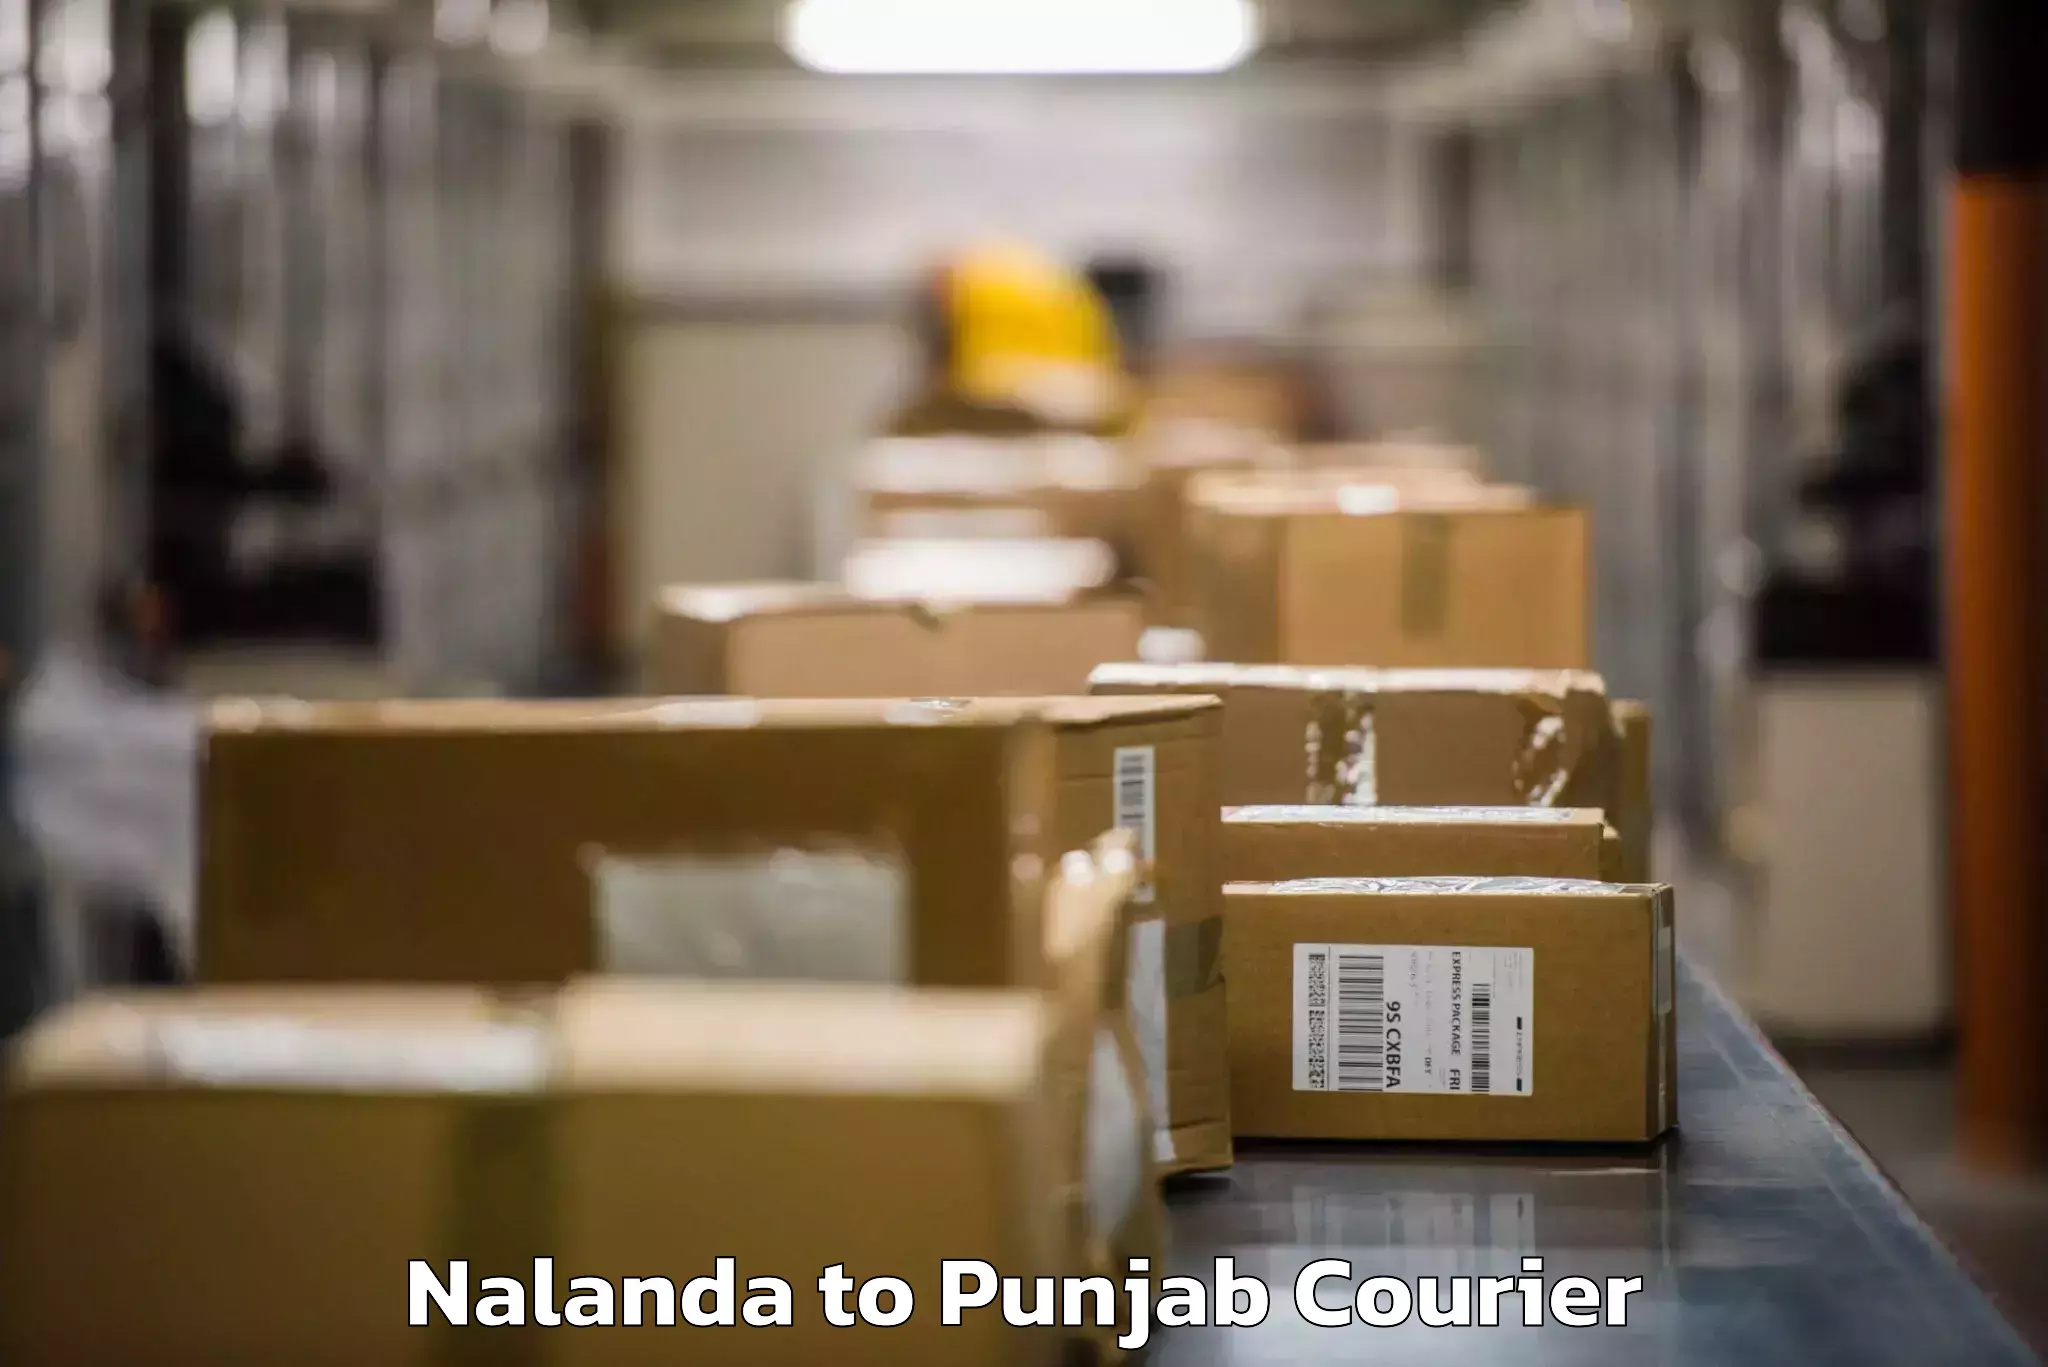 Baggage delivery technology Nalanda to Punjab